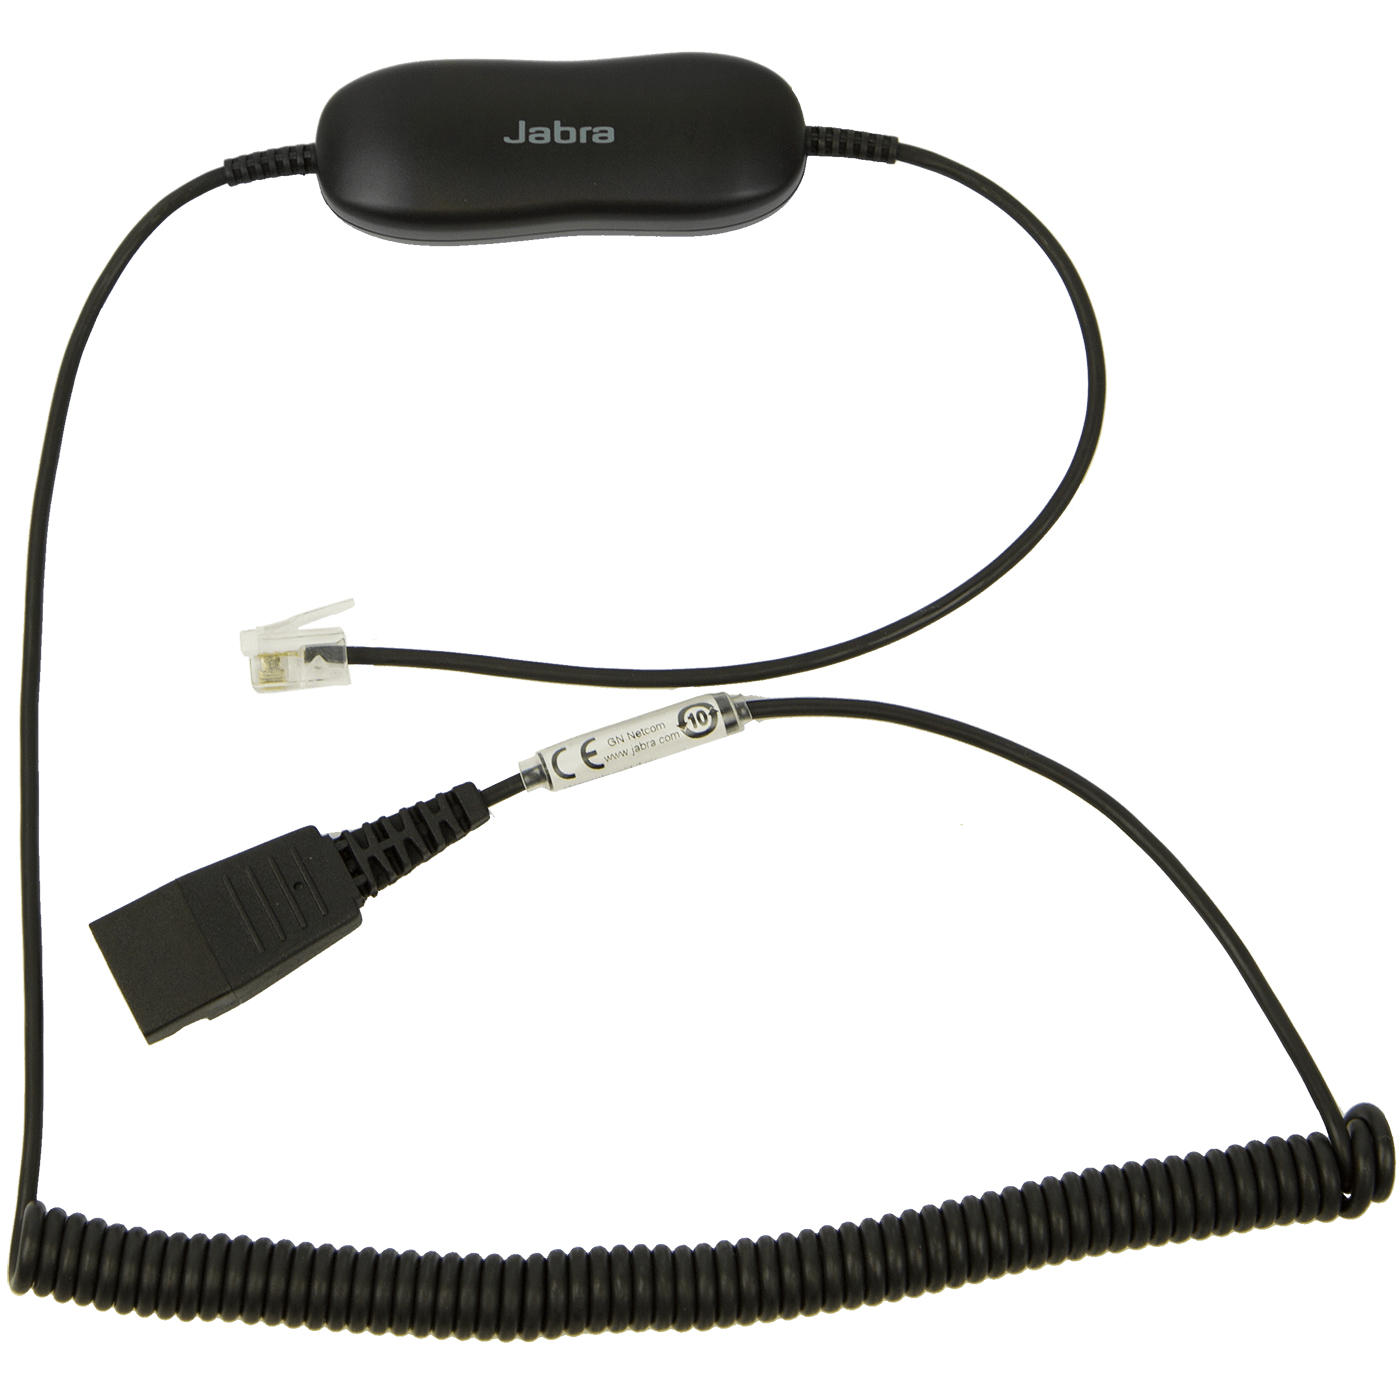 Jabra GN1216 - Headset-Kabel - RJ-9 männlich zu Quick Disconnect männlich